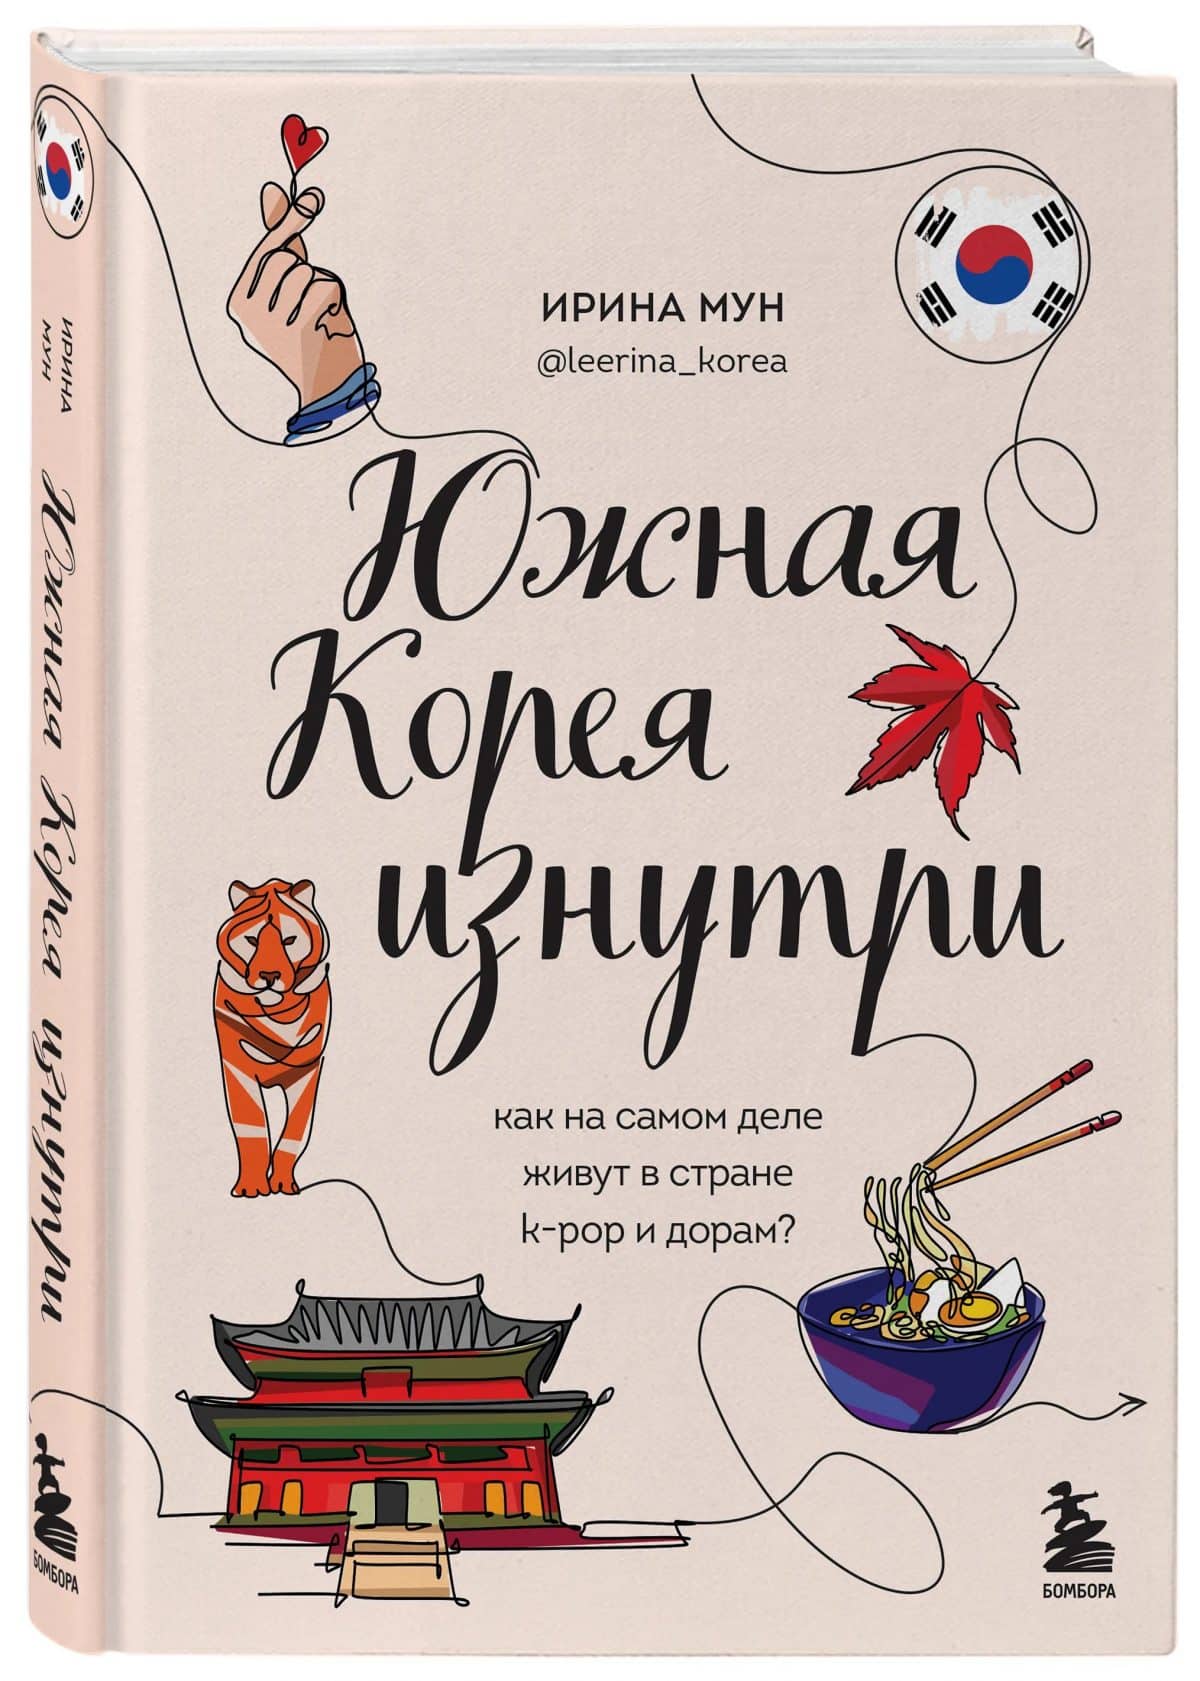 Книги о культуре и истории Южной Кореи